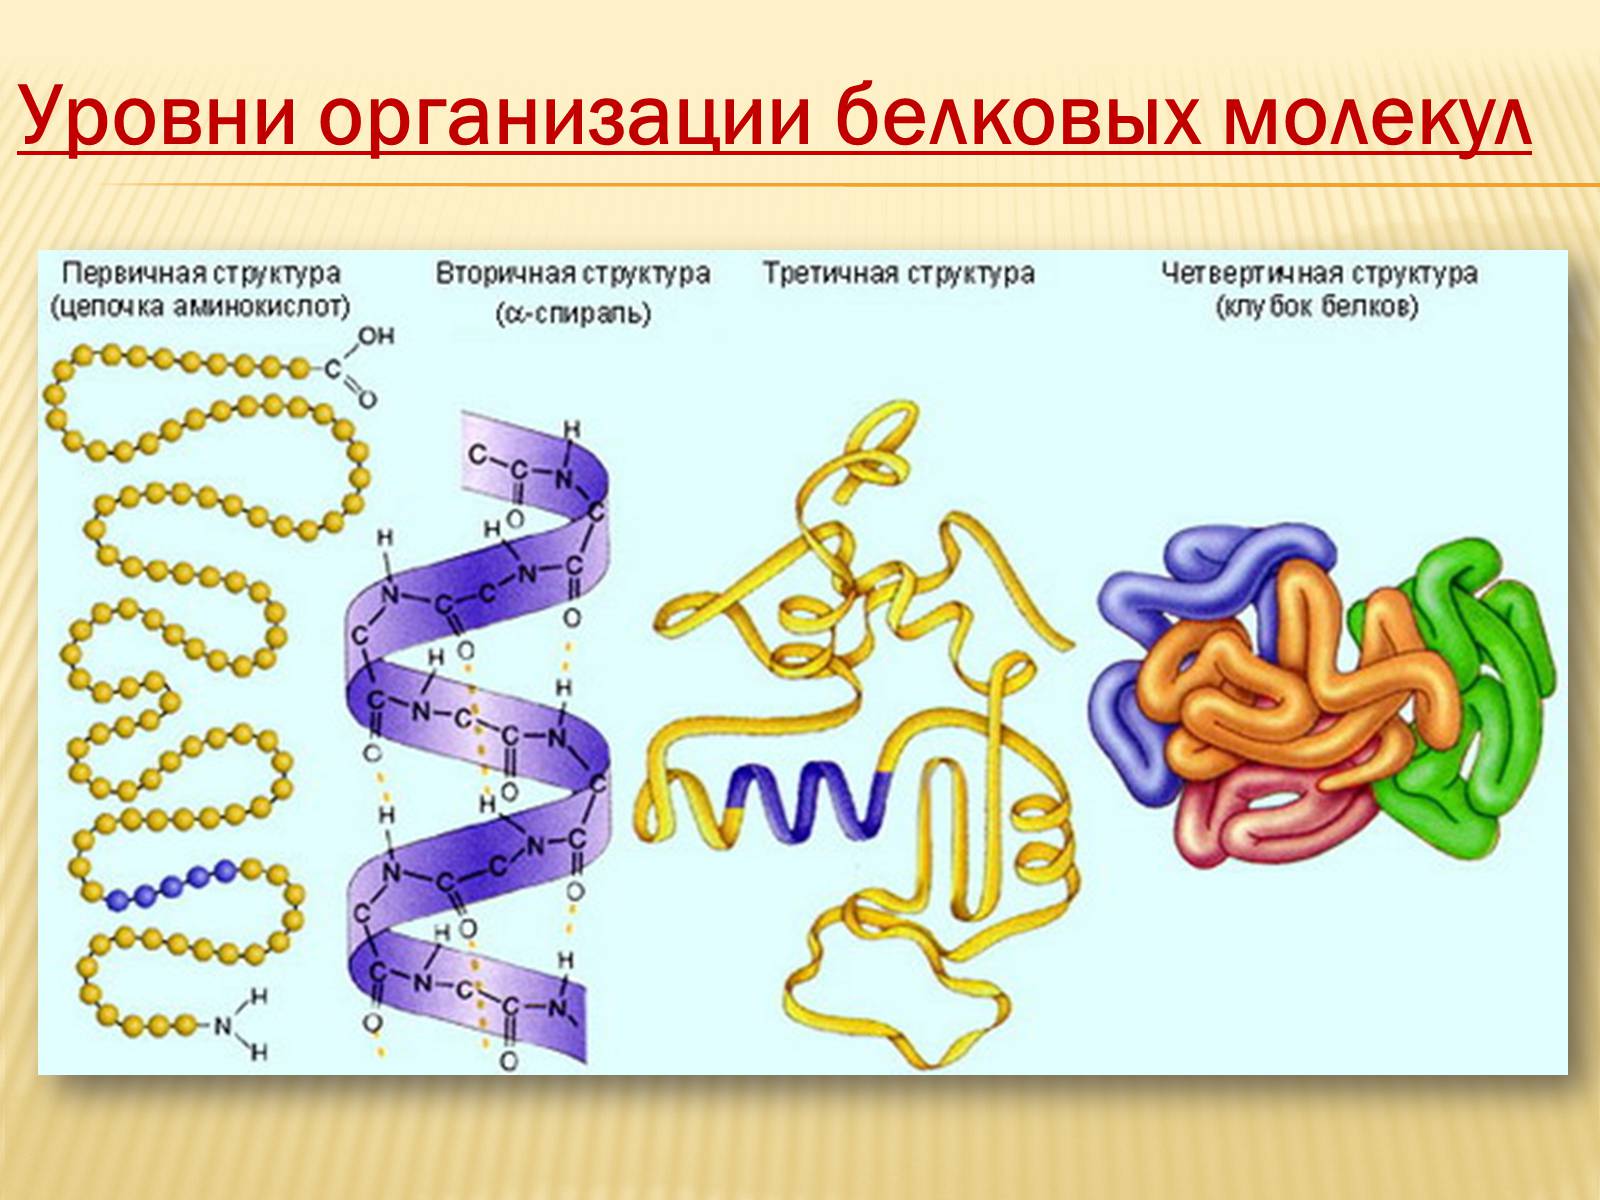 Уровни организации белковой молекулы (структура белка)